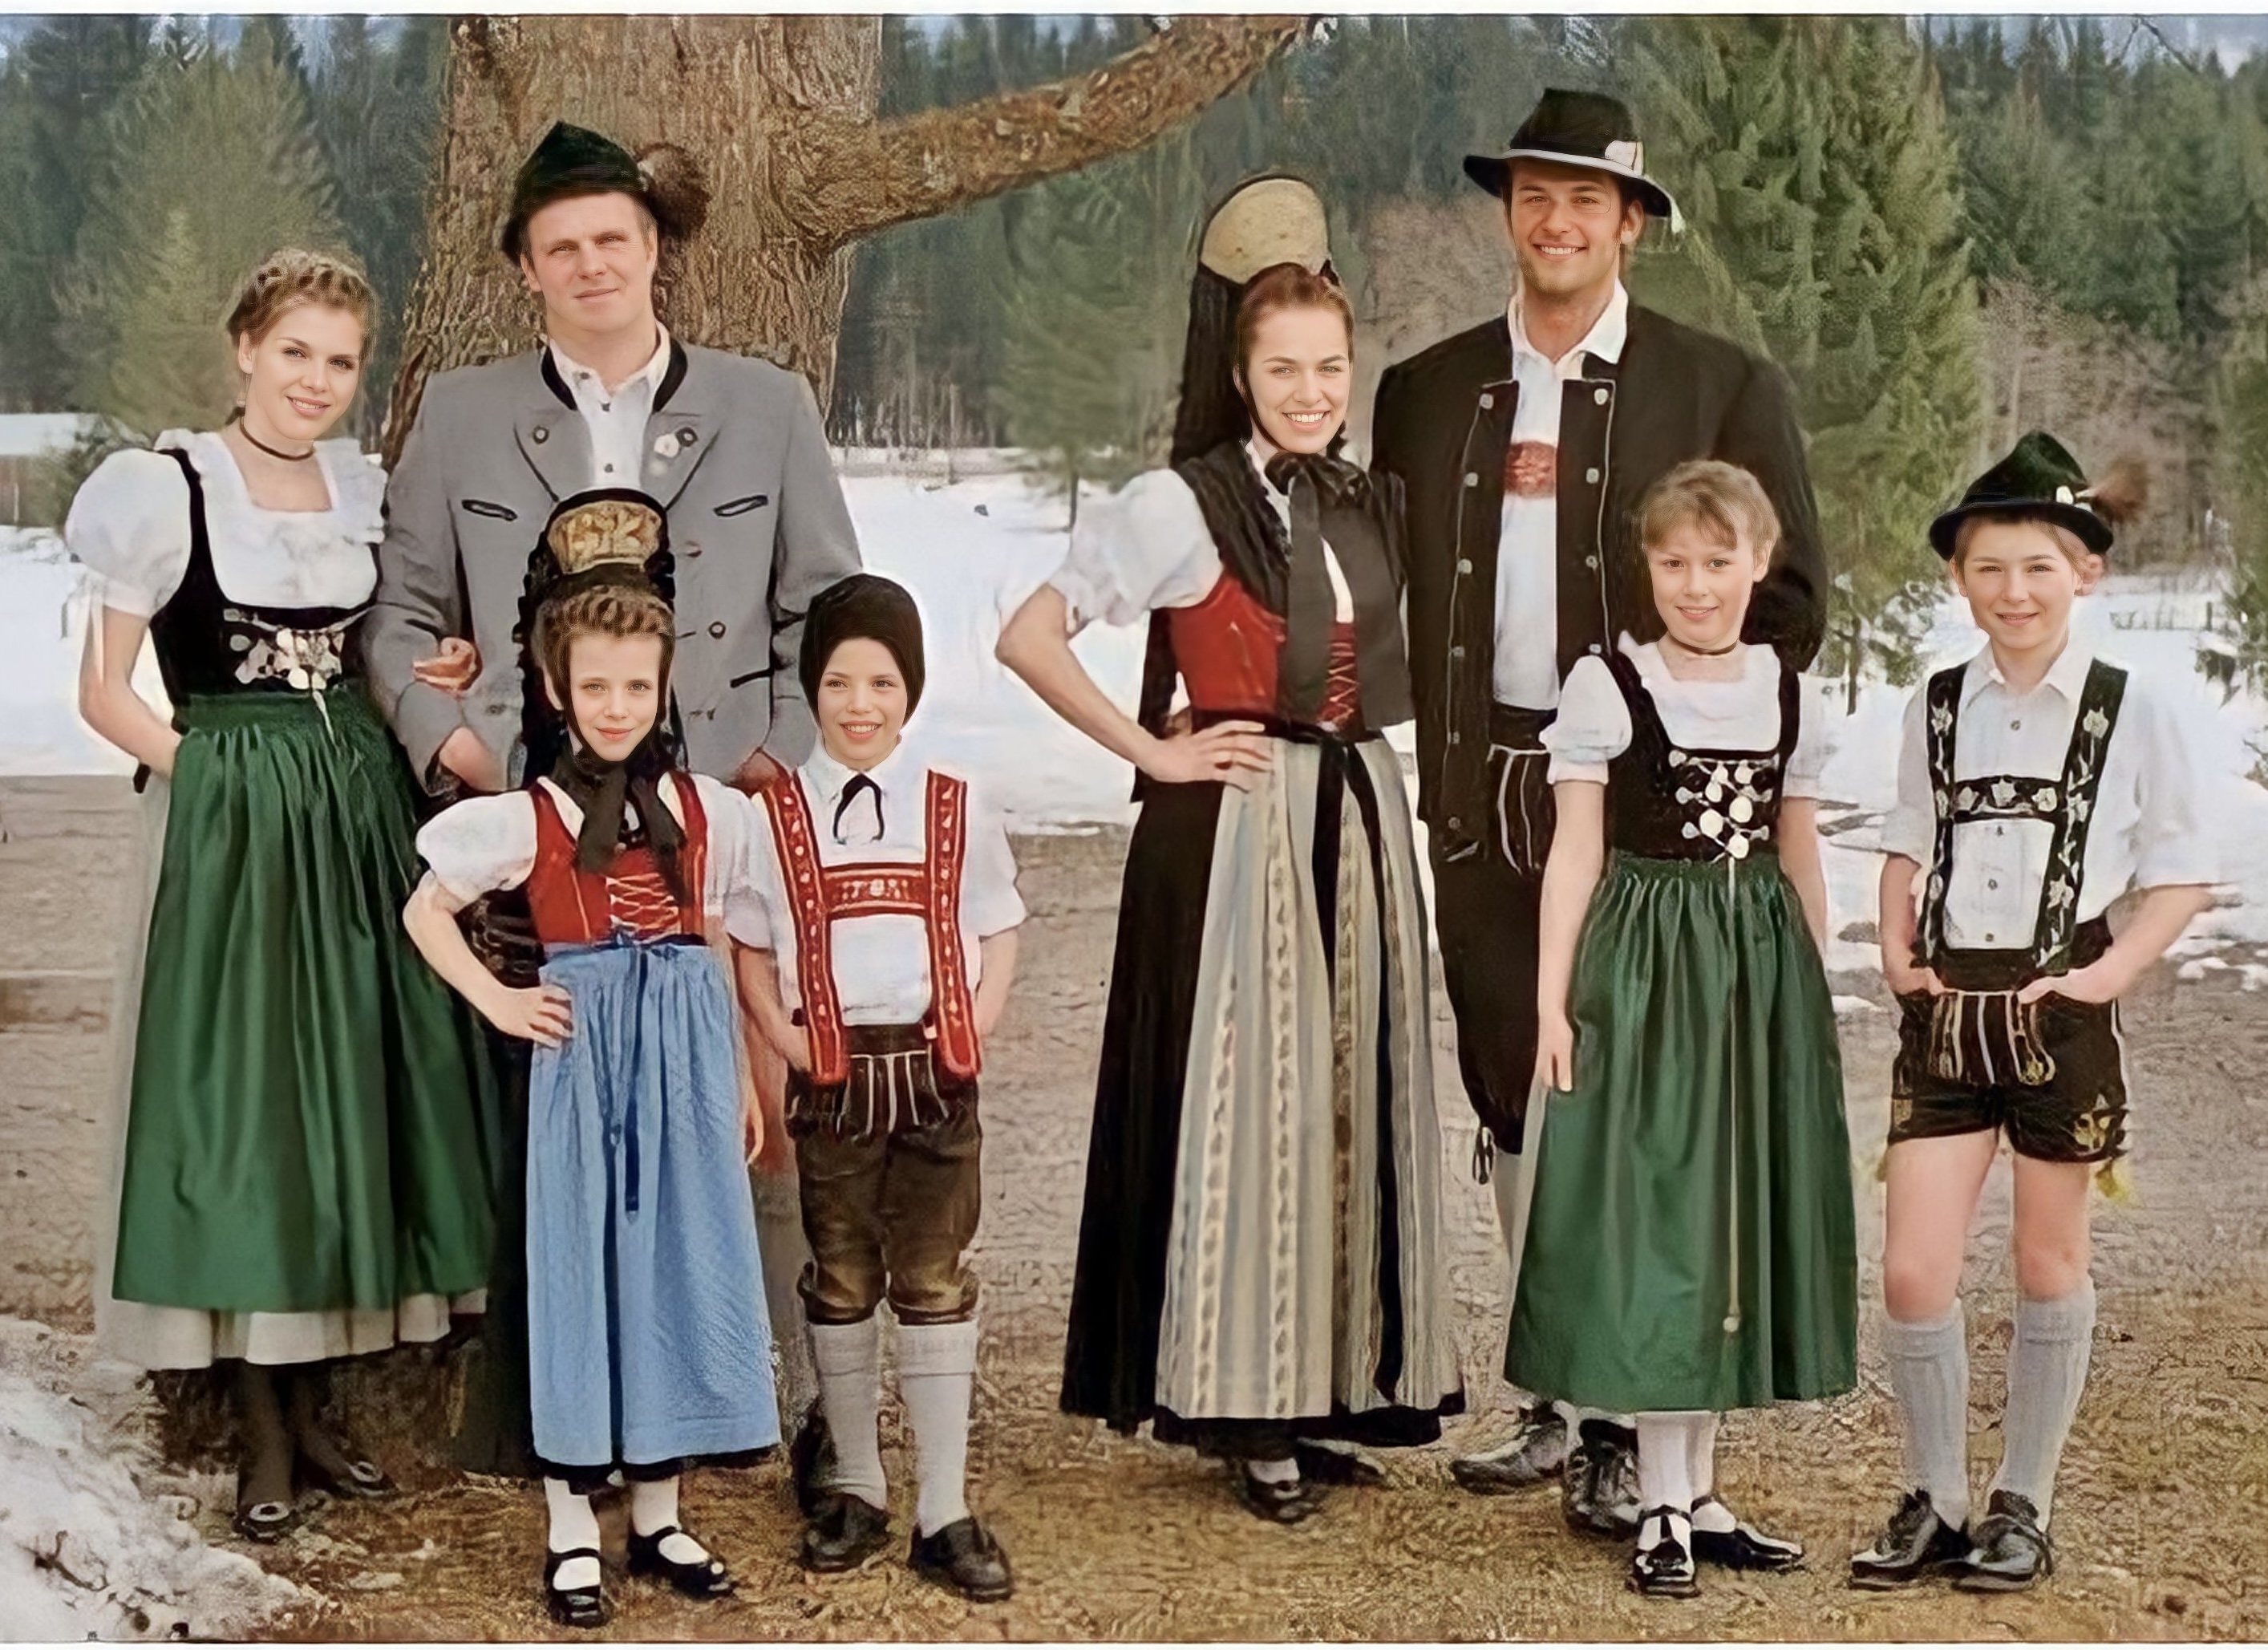 Минних. Национальный костюм Германии 181#. Северный Рейн-Вестфалия национальный костюм. Дирндль национальный костюм Германии.